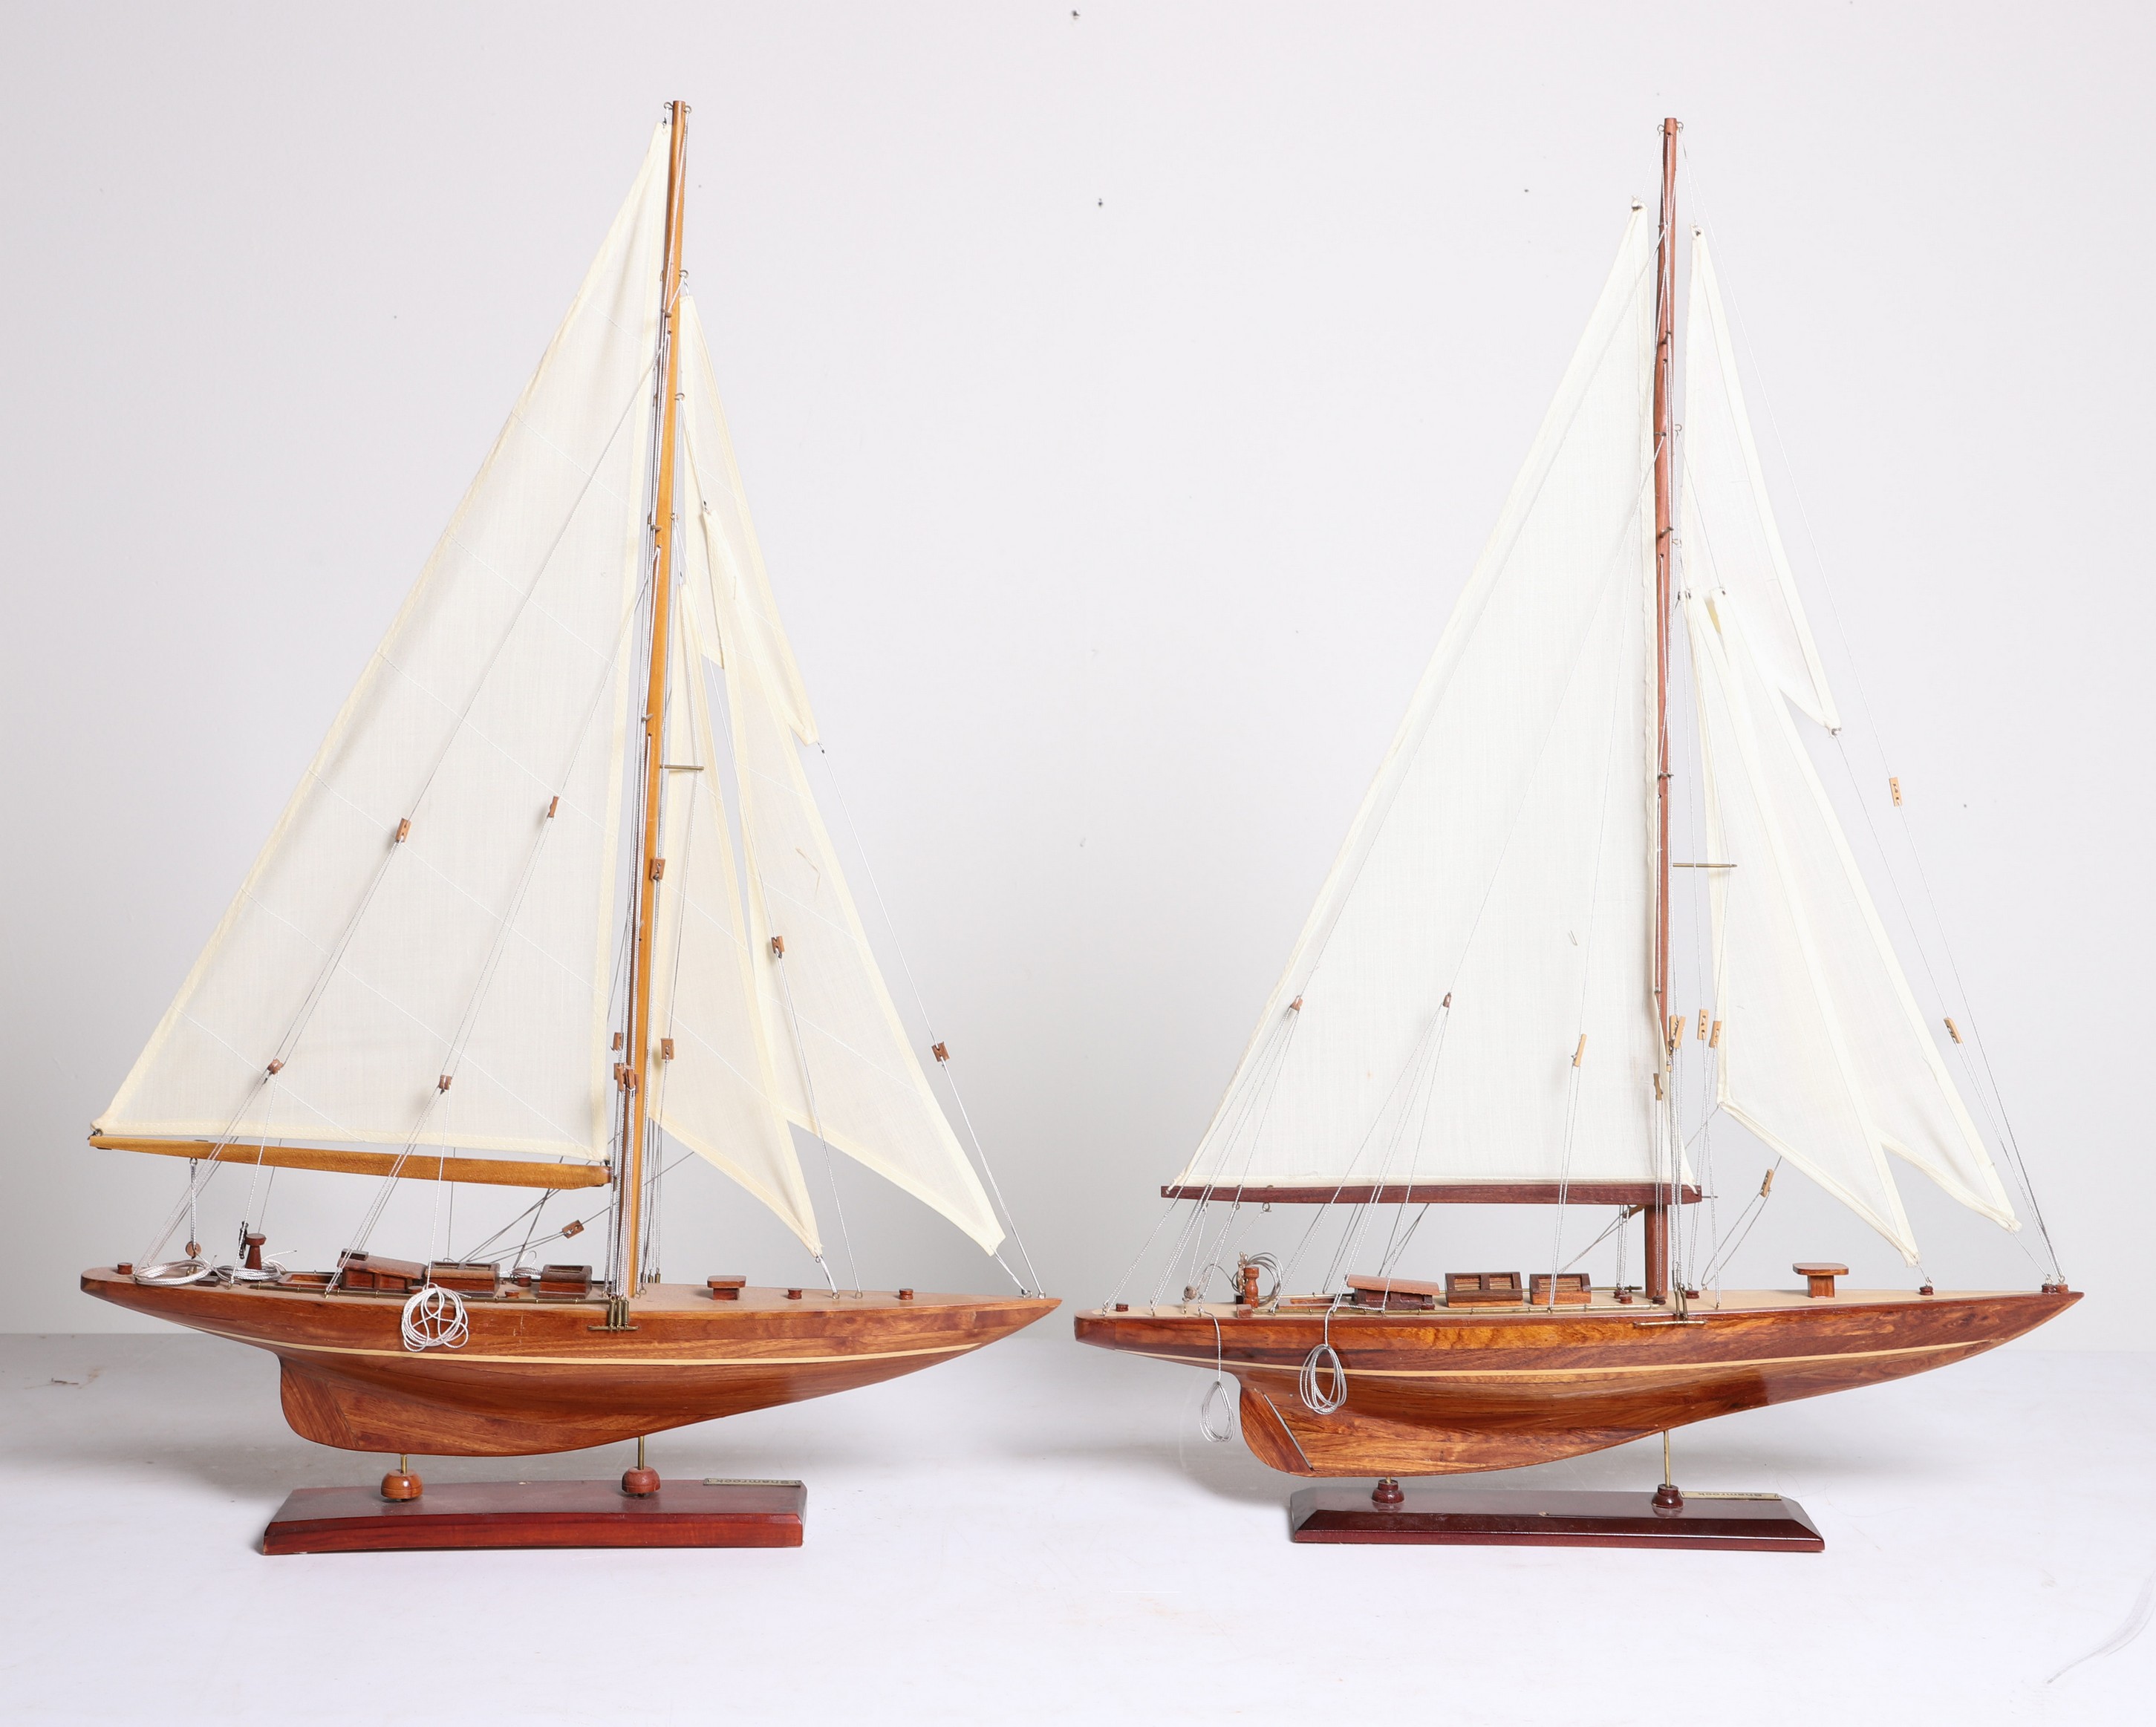  2 Model sailboats Shamrock  2e0a3f